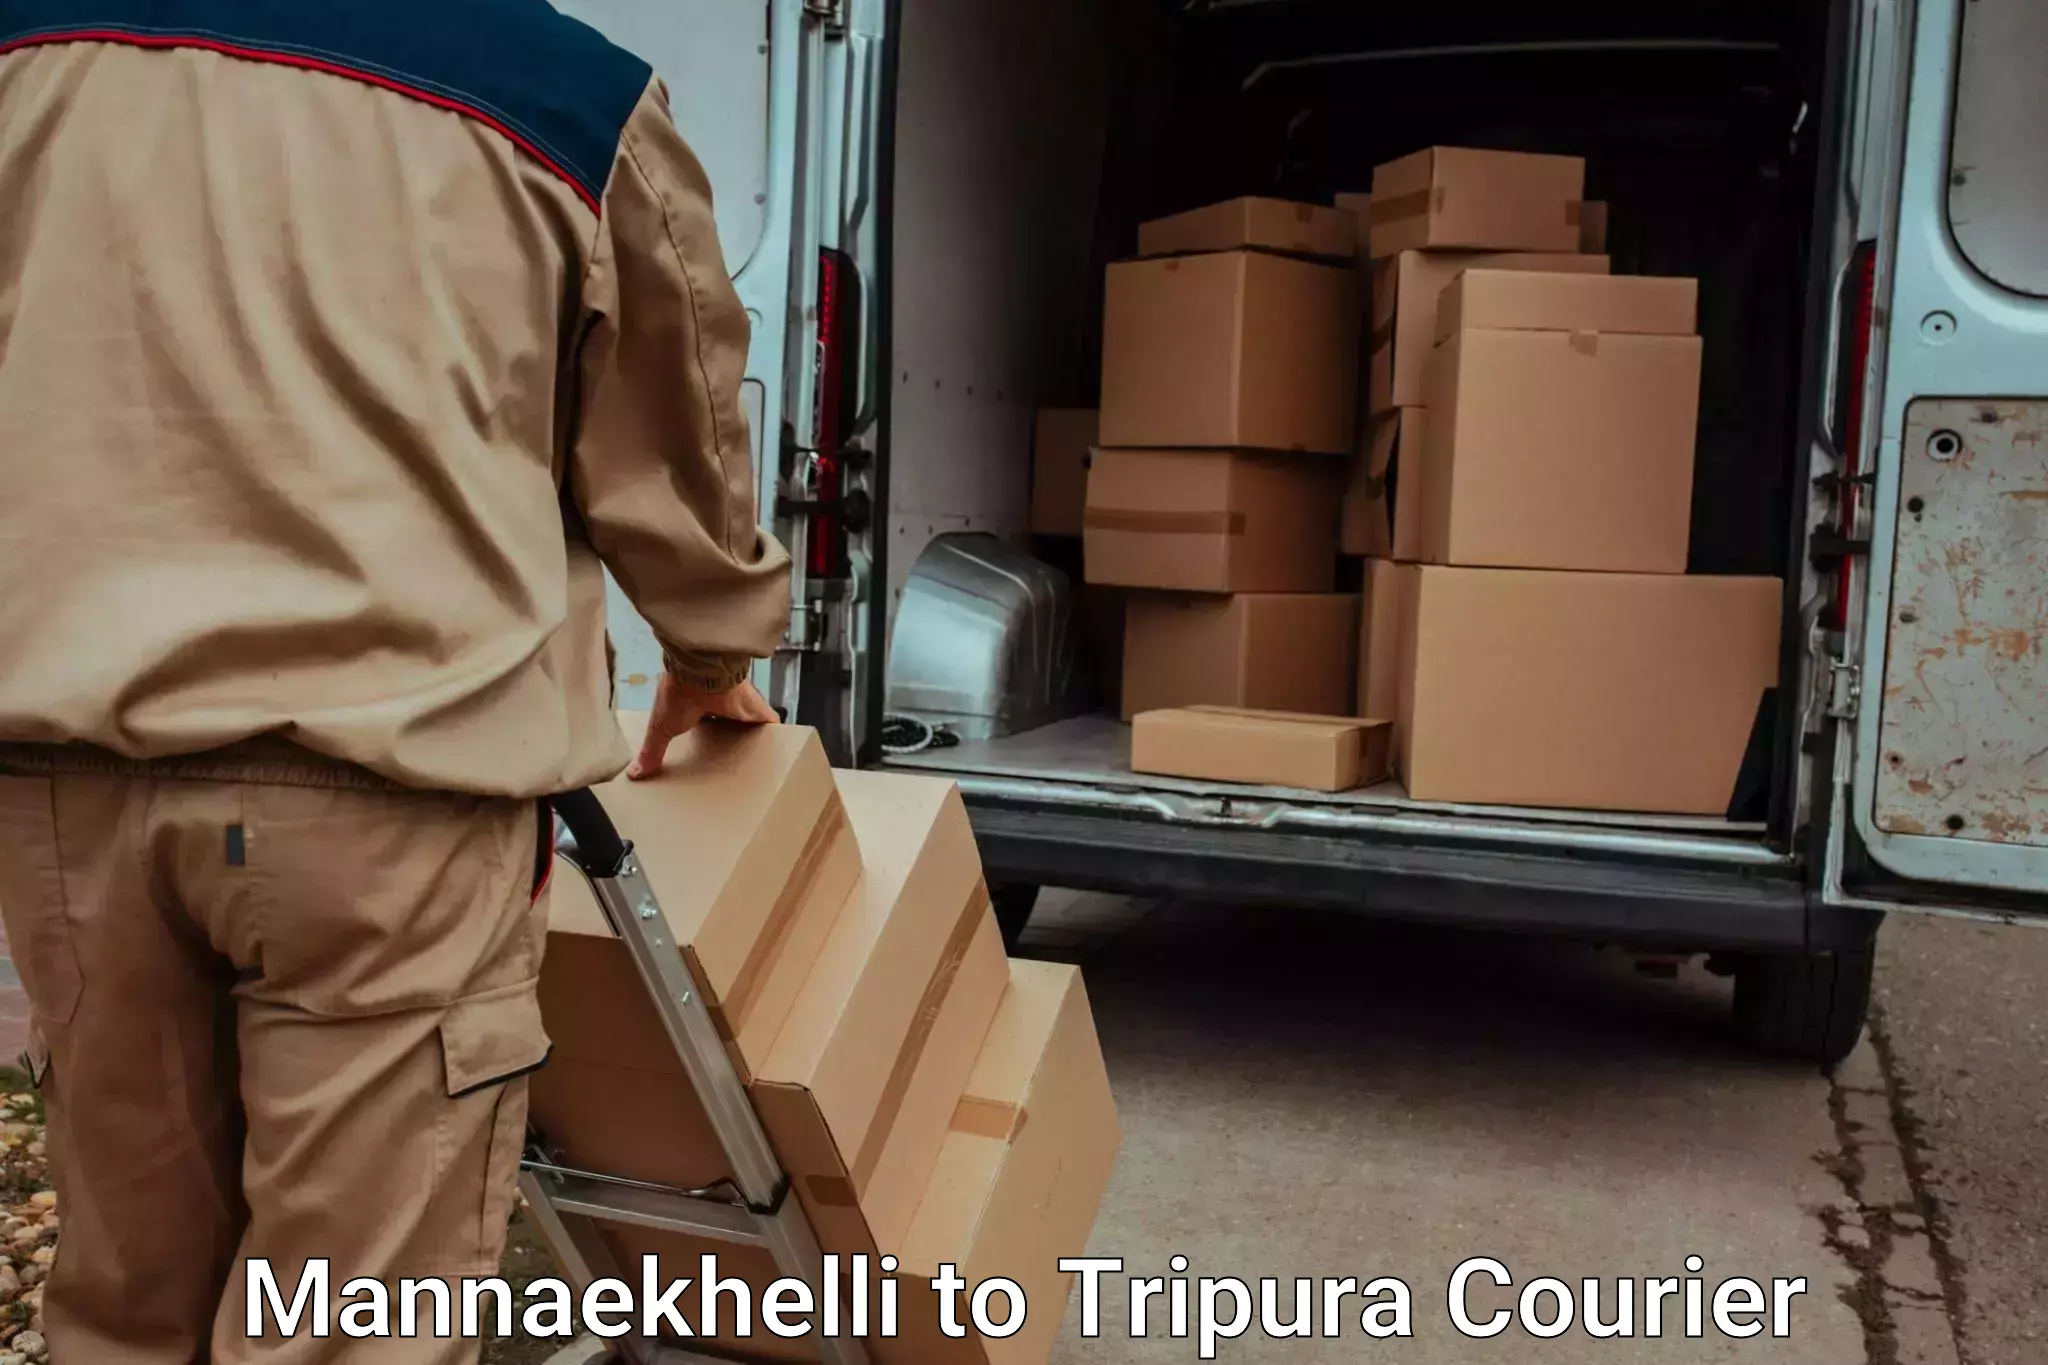 Flexible luggage courier service Mannaekhelli to Kailashahar